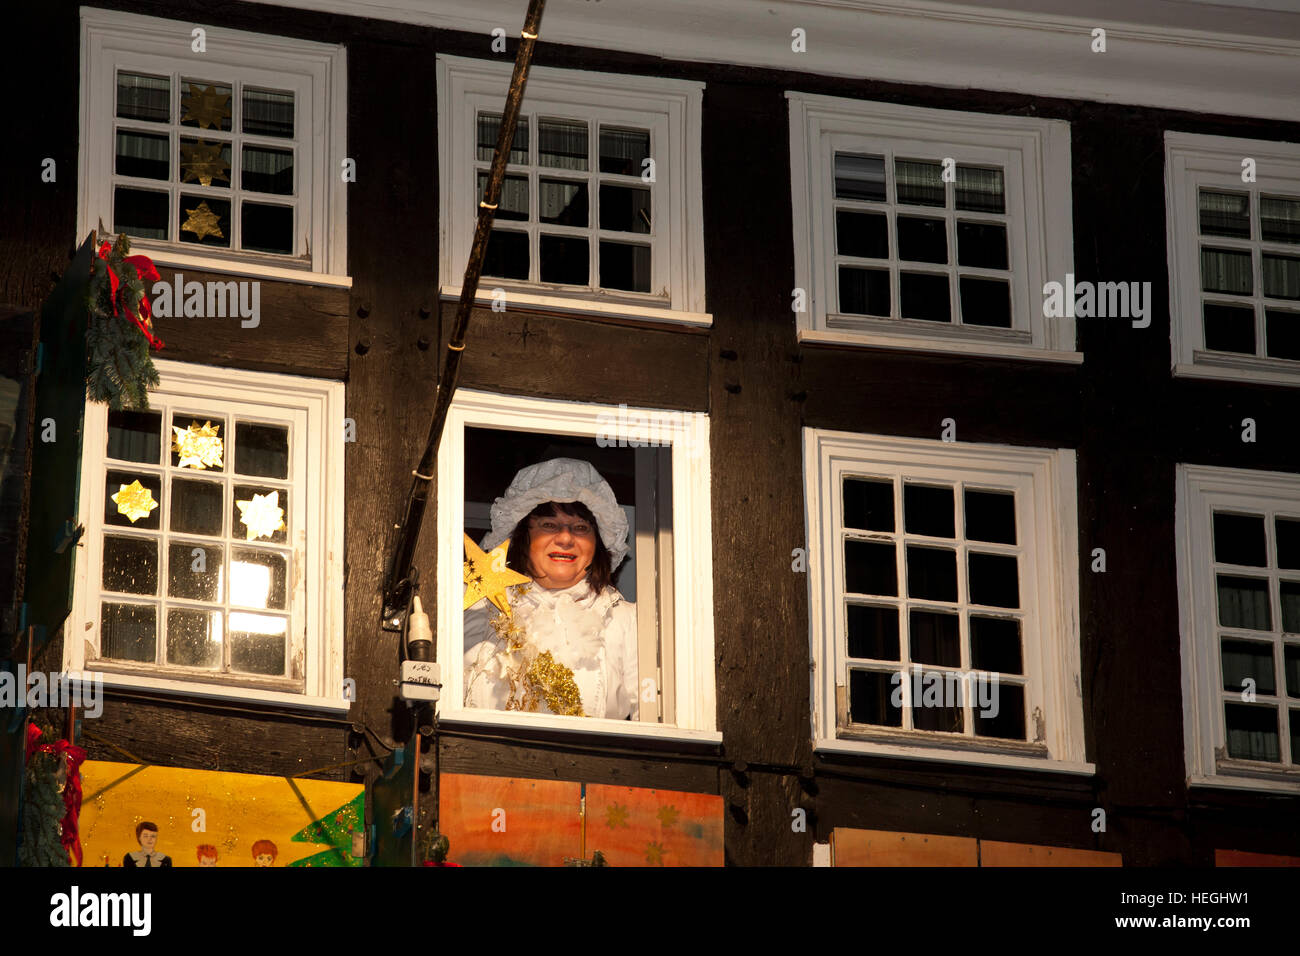 Deutschland, Hattingen, vom 1 Dezember 24 Fenster des alten Rathauses sind als einen riesigen Adventskalender Mutter Hulda eingerichtet Stockfoto